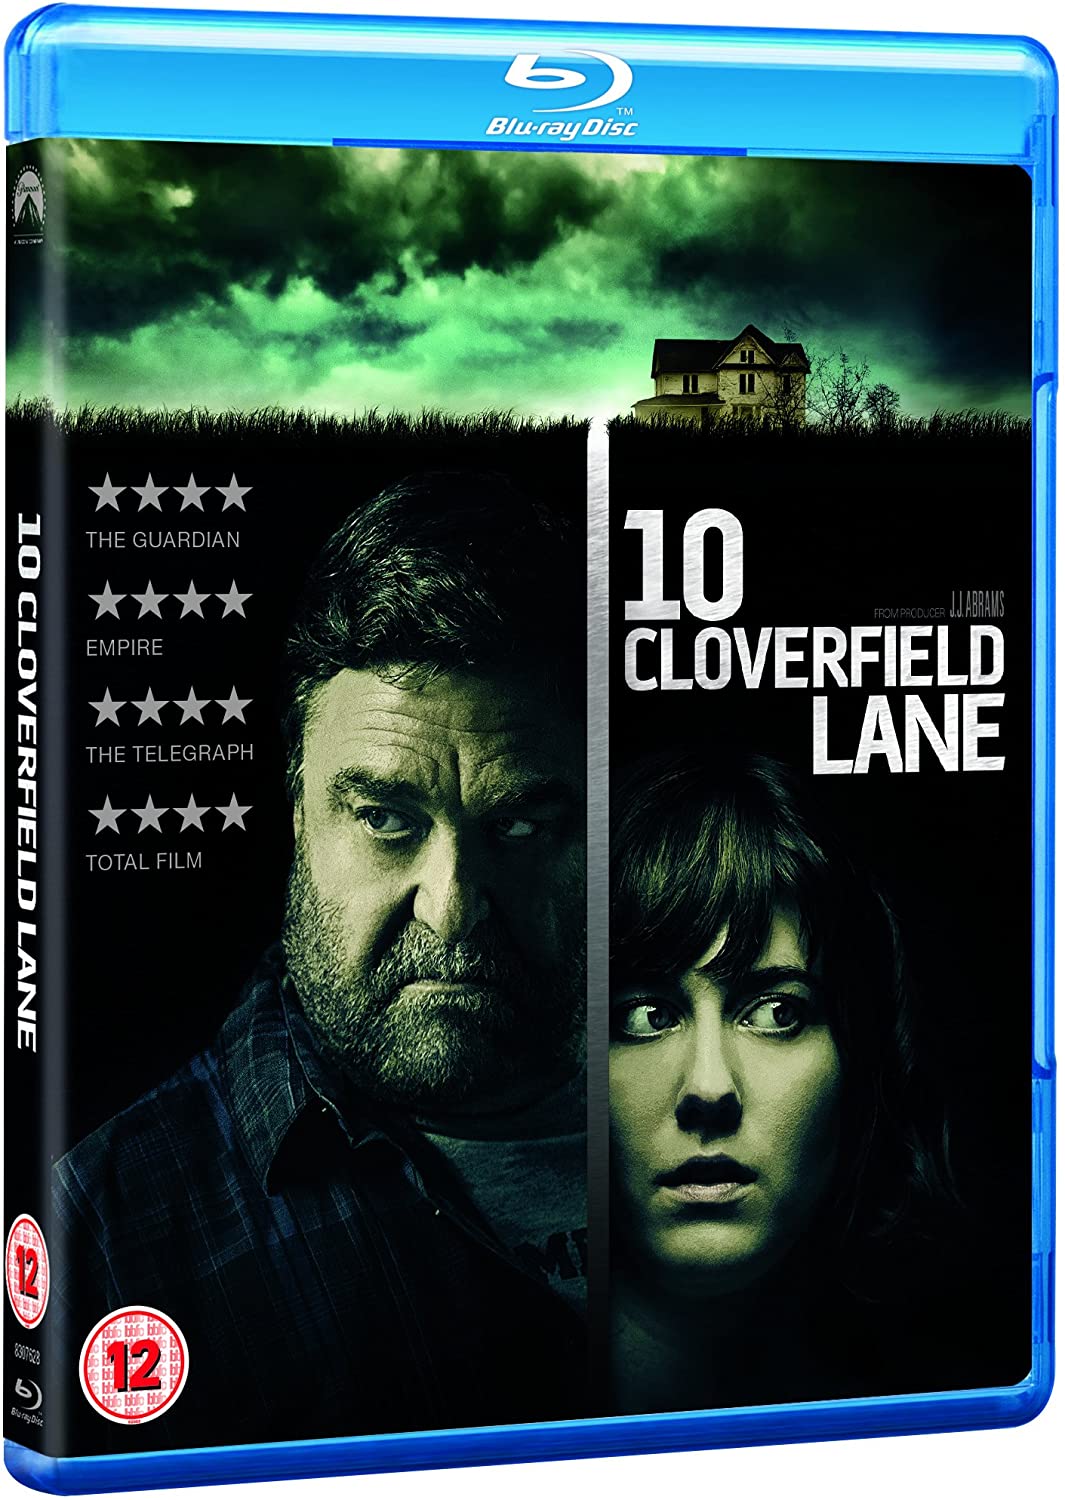 10 Cloverfield Lane [Sci-fi] [2016] [Region Free] [Blu-ray]